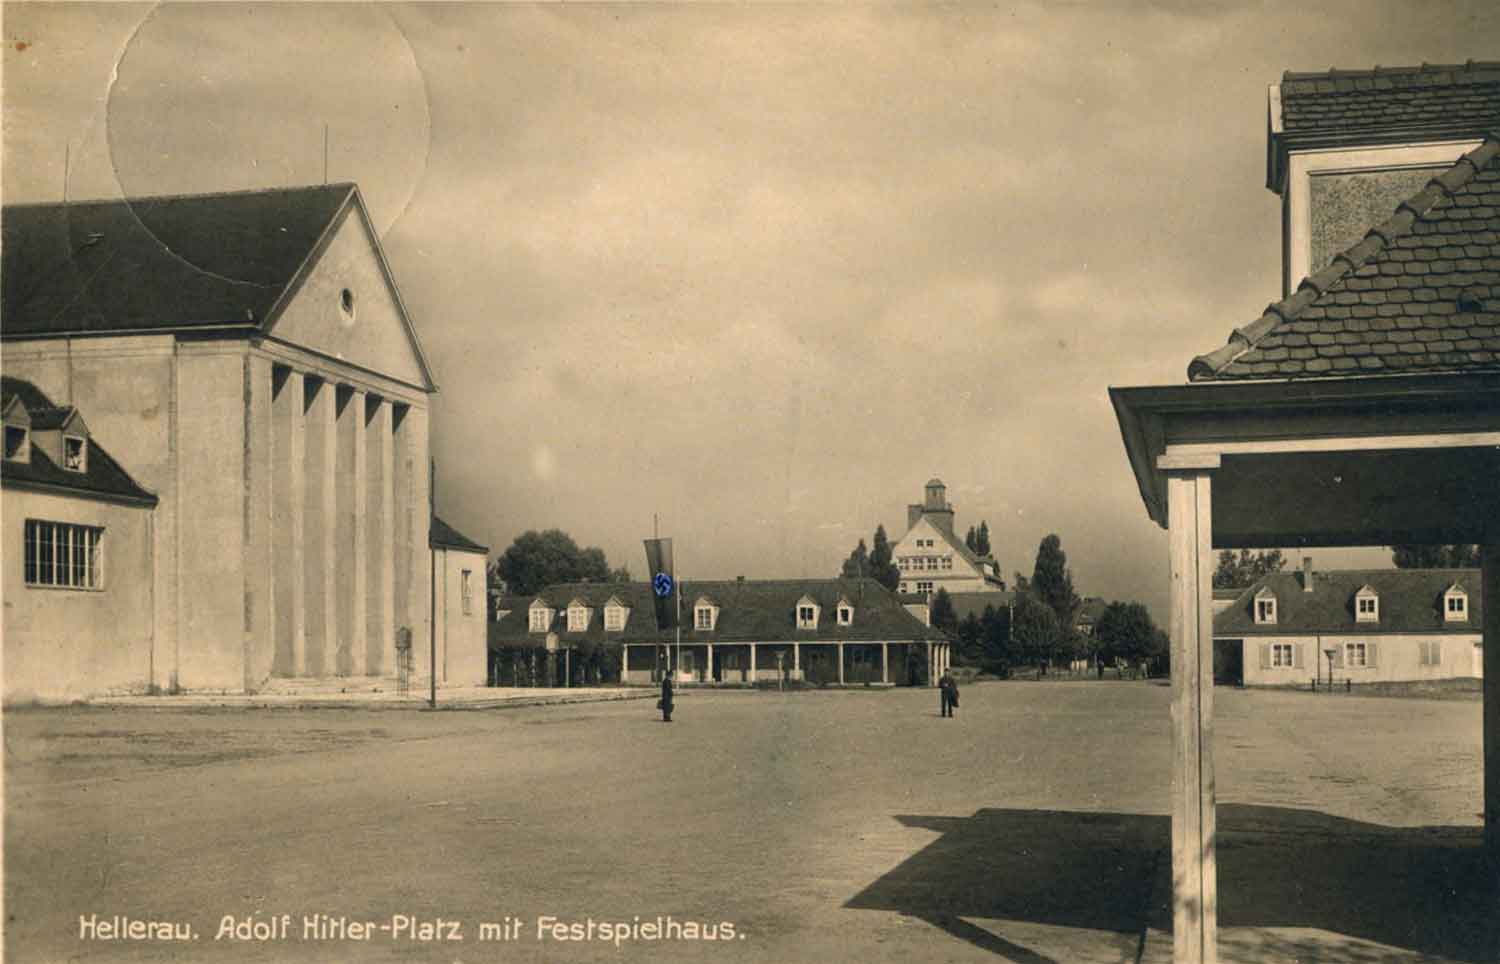 Foto, schwarz-weiß: Links das Festspielhaus, im Hintergrund ein Pensionshaus, davor die Fläche des Festspielhausgeländes.